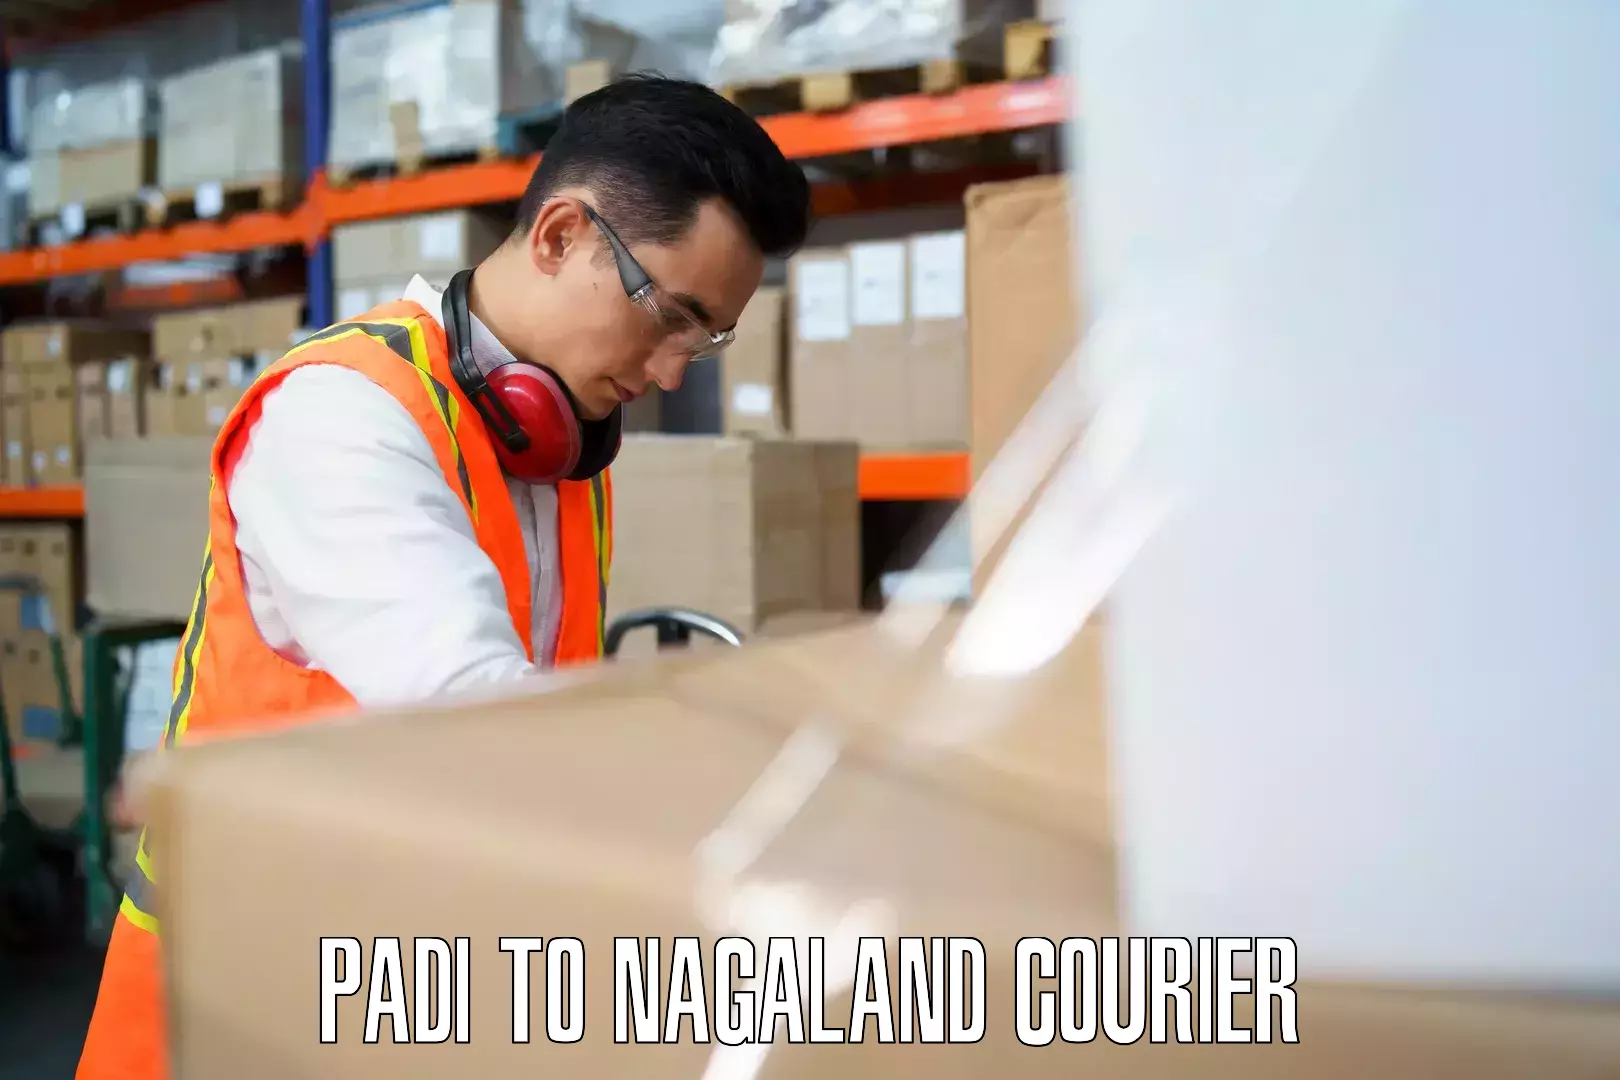 Baggage transport professionals Padi to NIT Nagaland